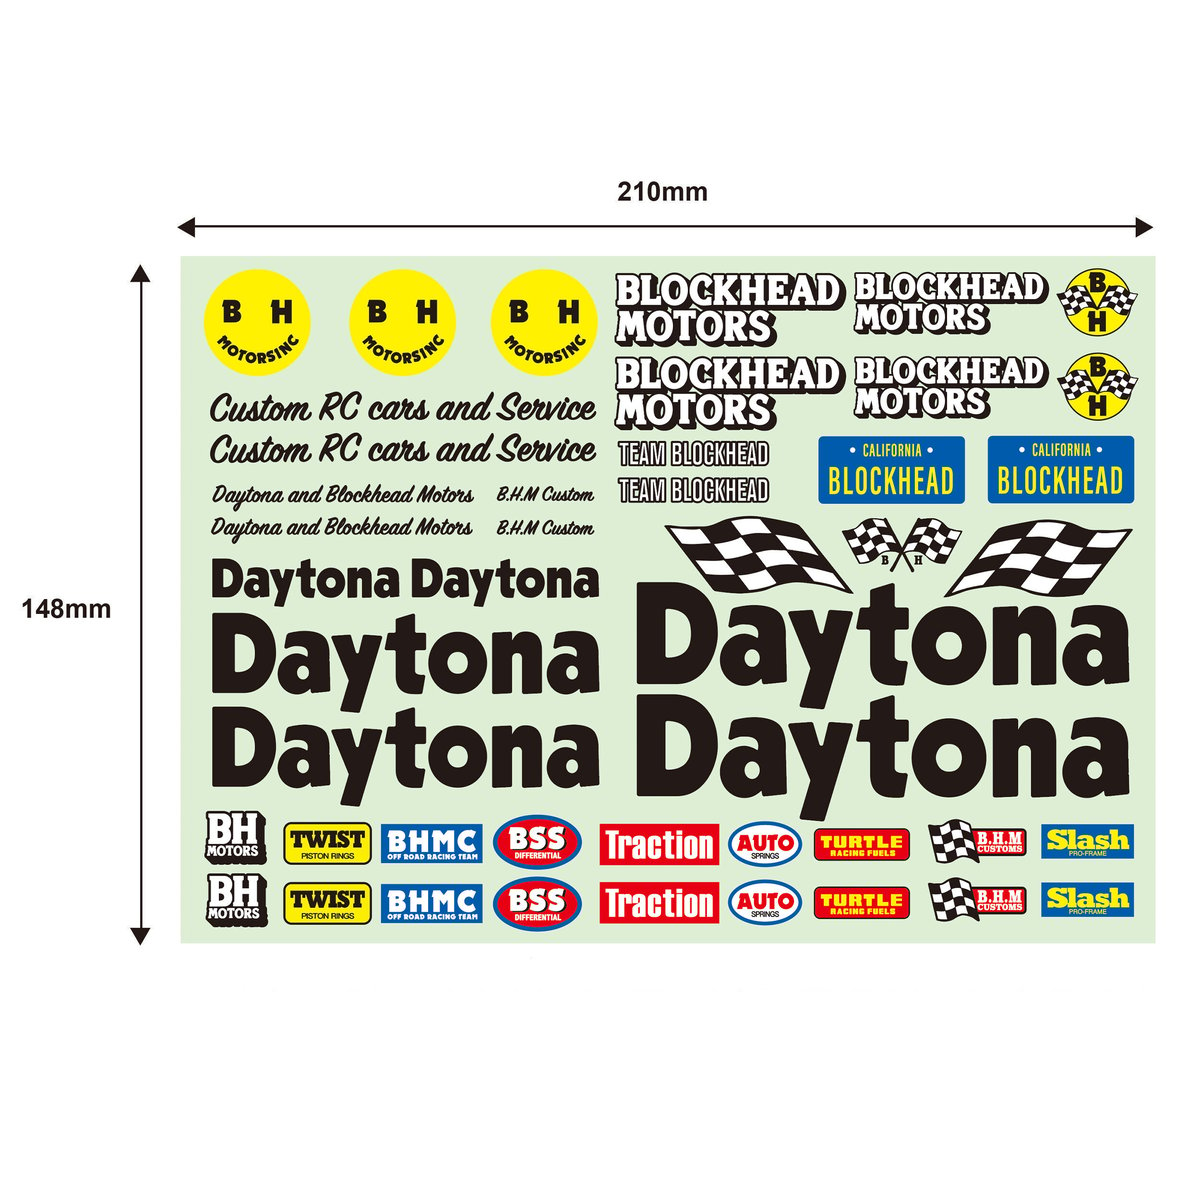 Daytona X BLOCKHEAD MOTORSコラボデカールシート | BLOCKHEA...